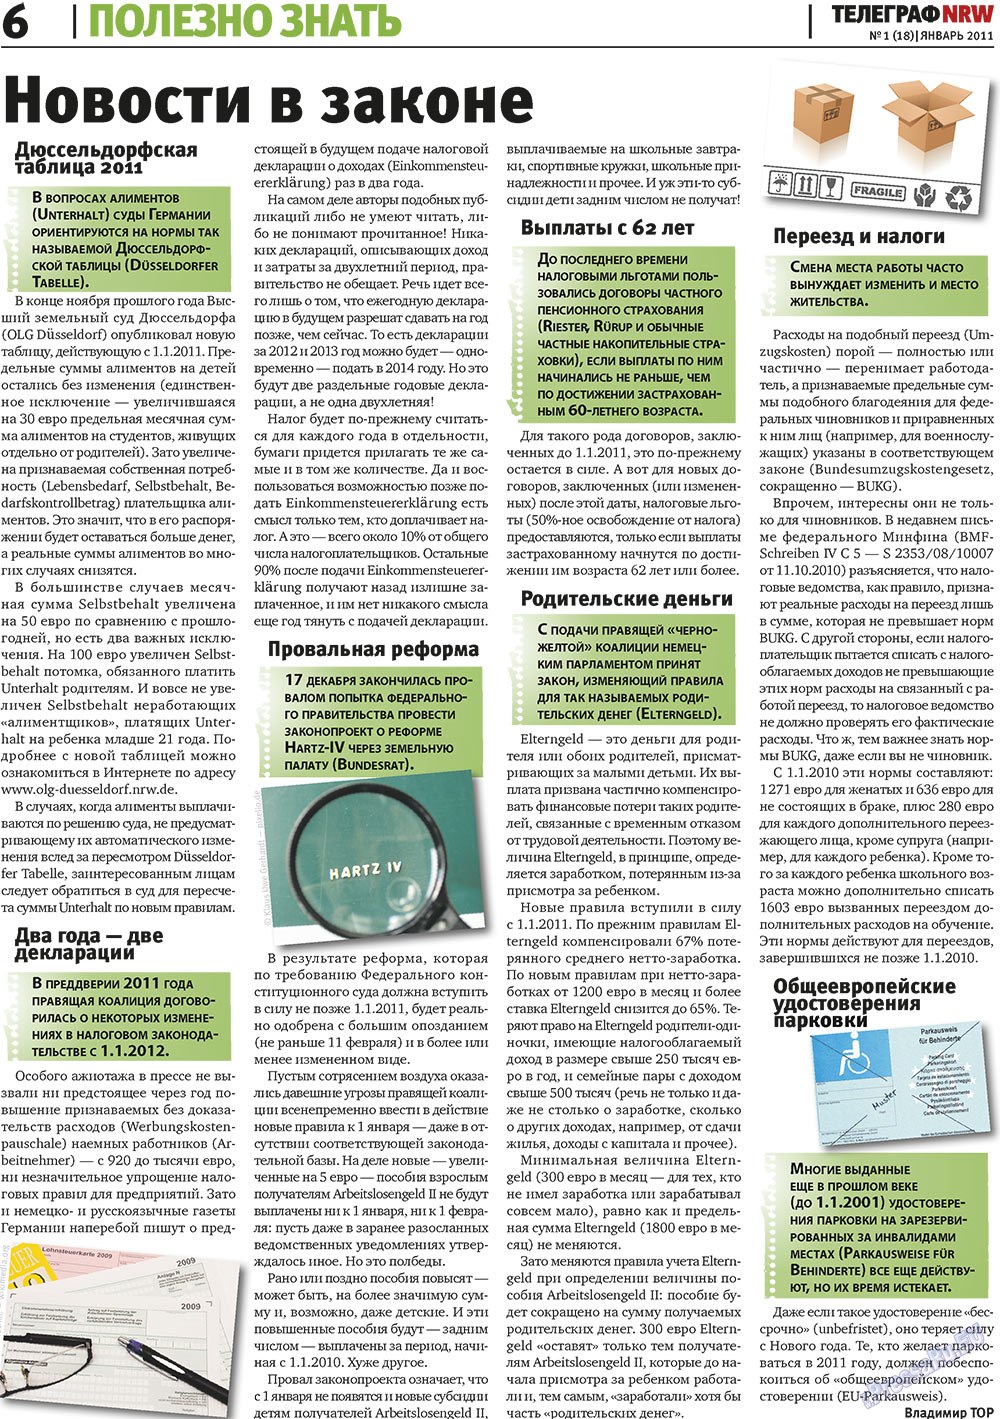 Телеграф NRW (газета). 2011 год, номер 1, стр. 6